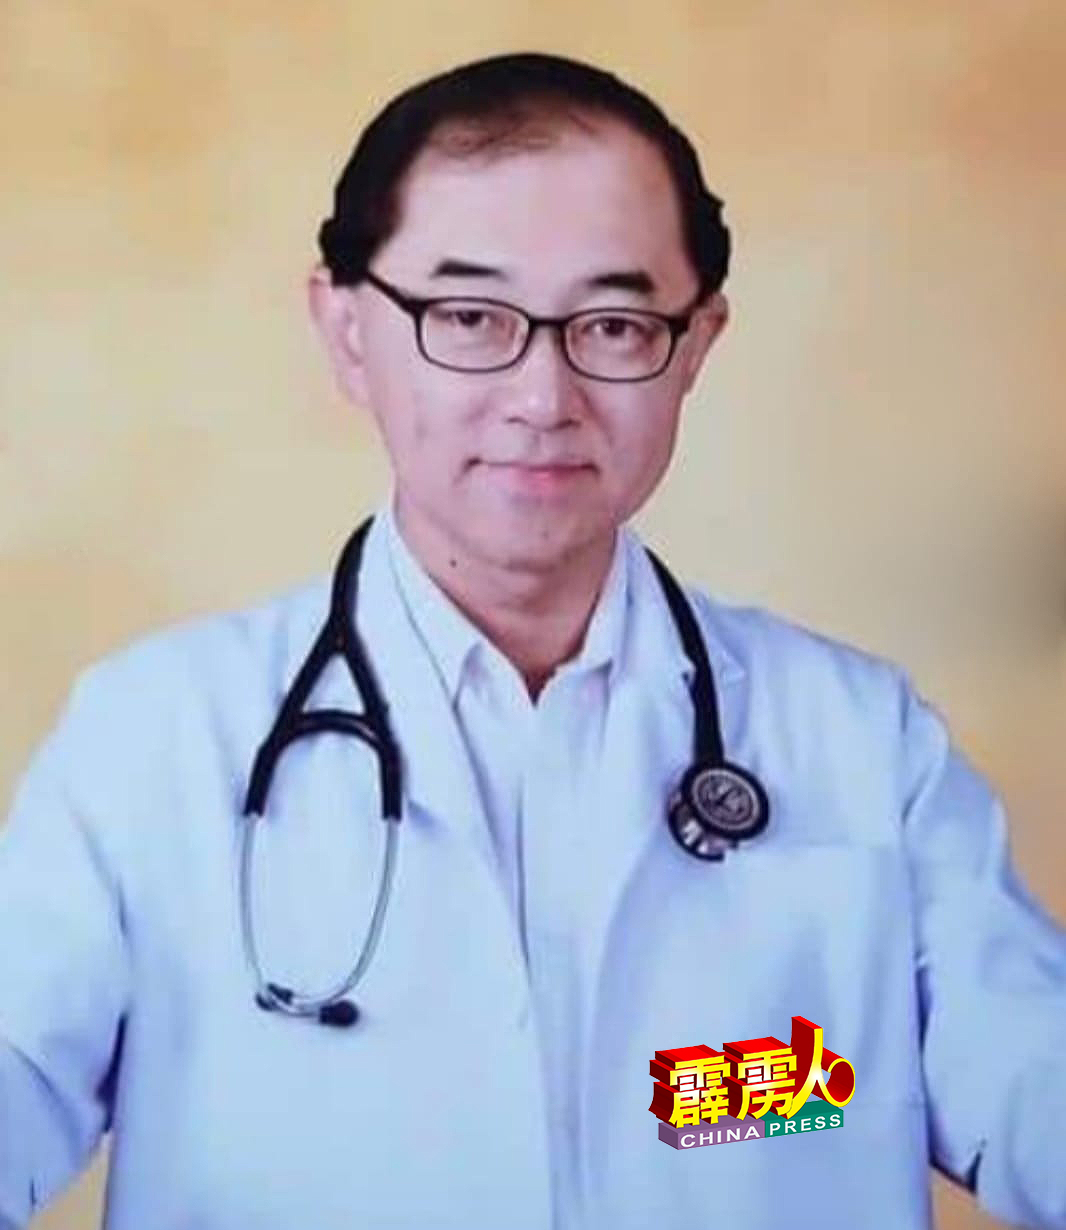 马汉顺是心脏专科医生。